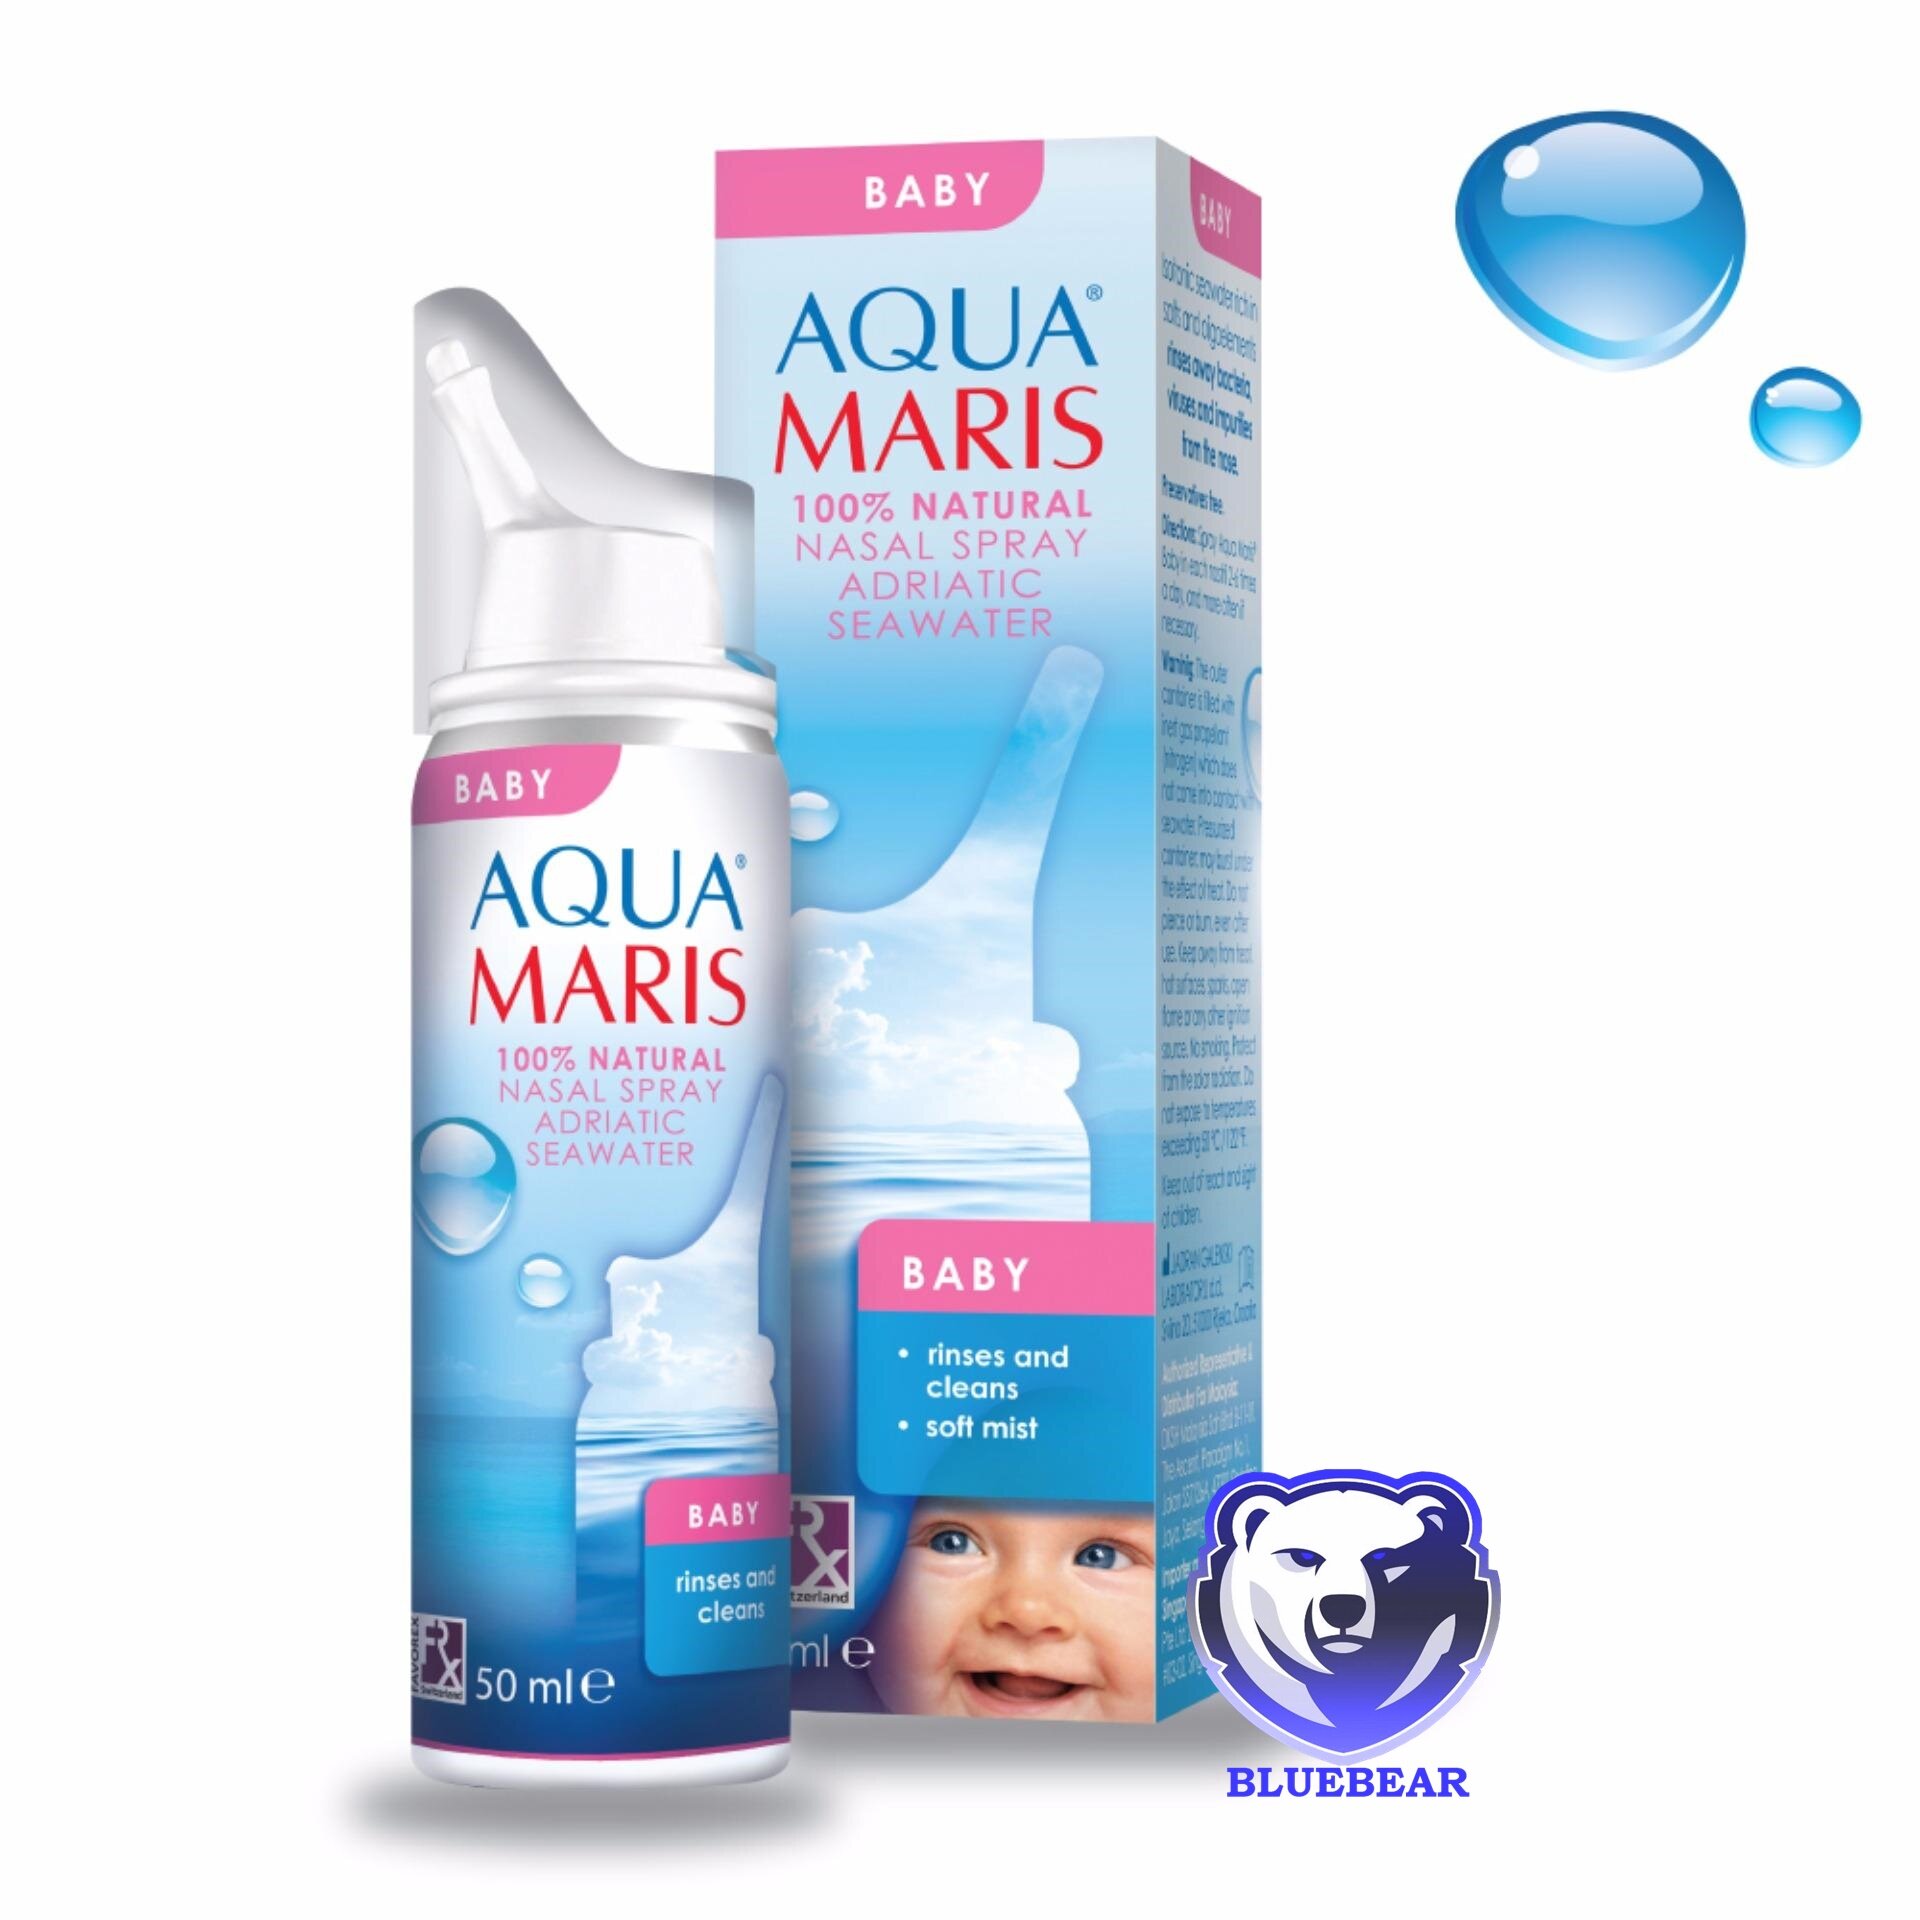 Aqua Maris Baby Nasal 50 ml. ล๊อตใหม่ สเปรย์น้ำเกลือพ่นจมูก (สำหรับเด็กอ่อน) น้ำทะเล น้ำเกลือ ล้างจมูก ทารก